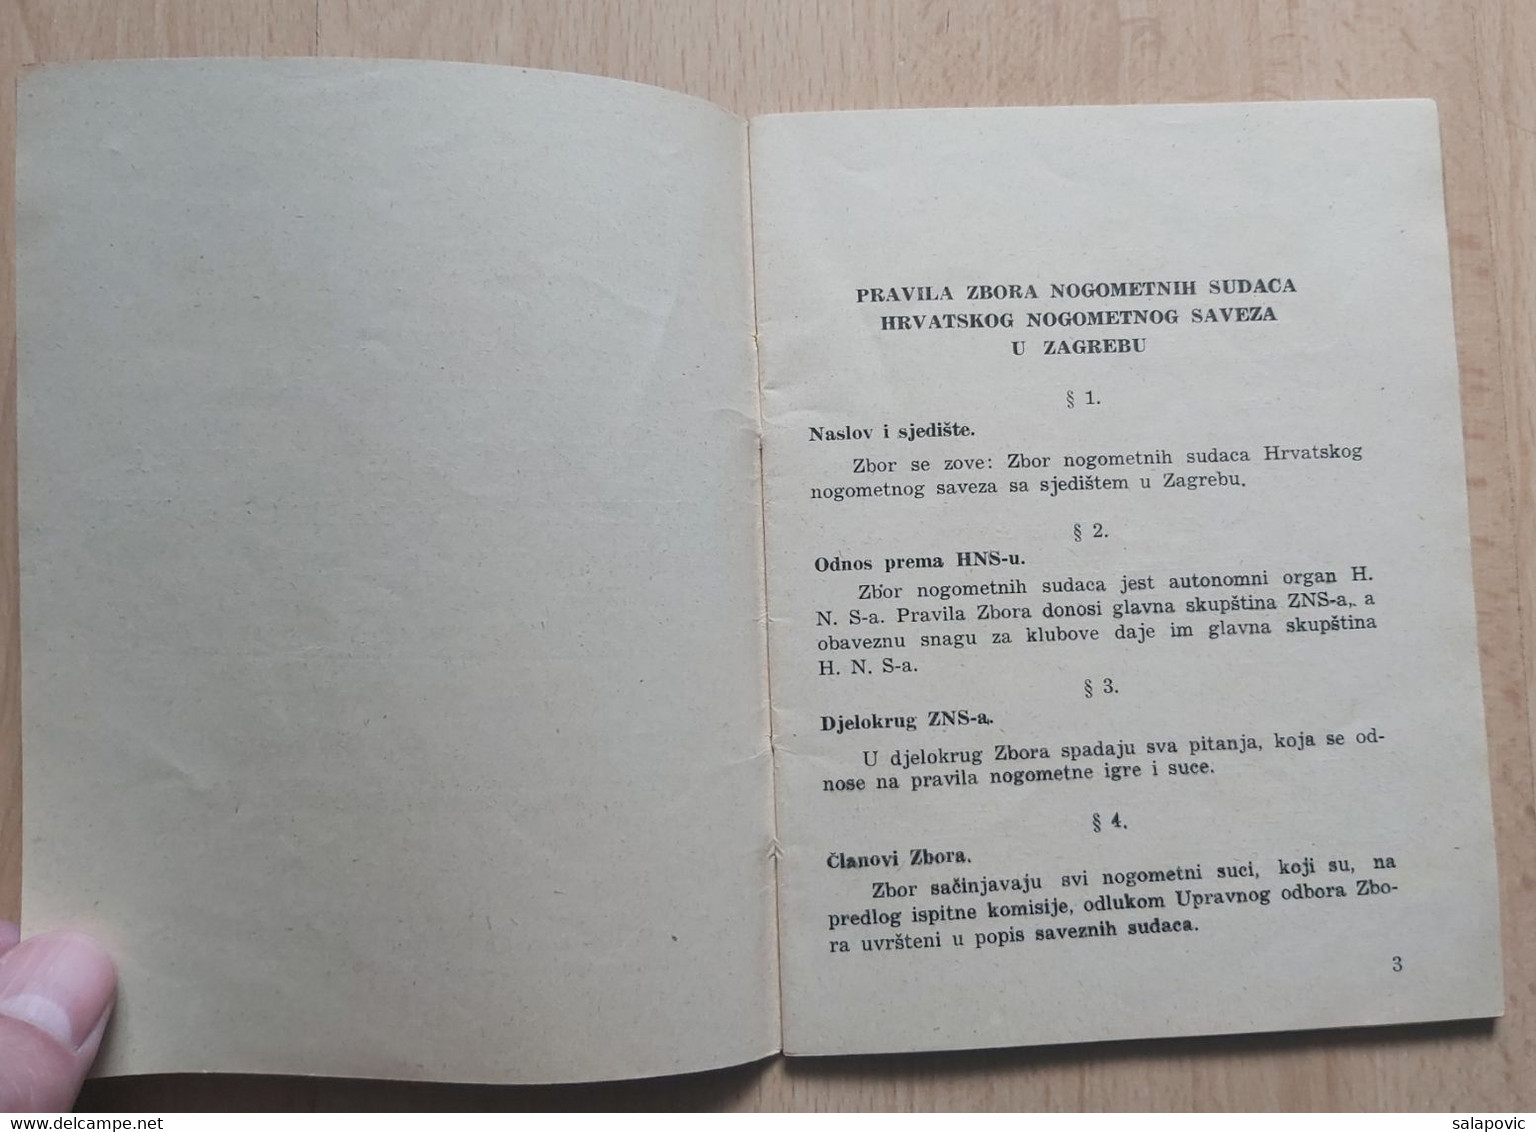 PRAVILA ZBORA NOGOMETNIH SUDACA HRVATSKOG NOGOMETNOG SAVEZA U ZAGREBU 1940  CROATIAN FOOTBALL FEDERATION - Livres